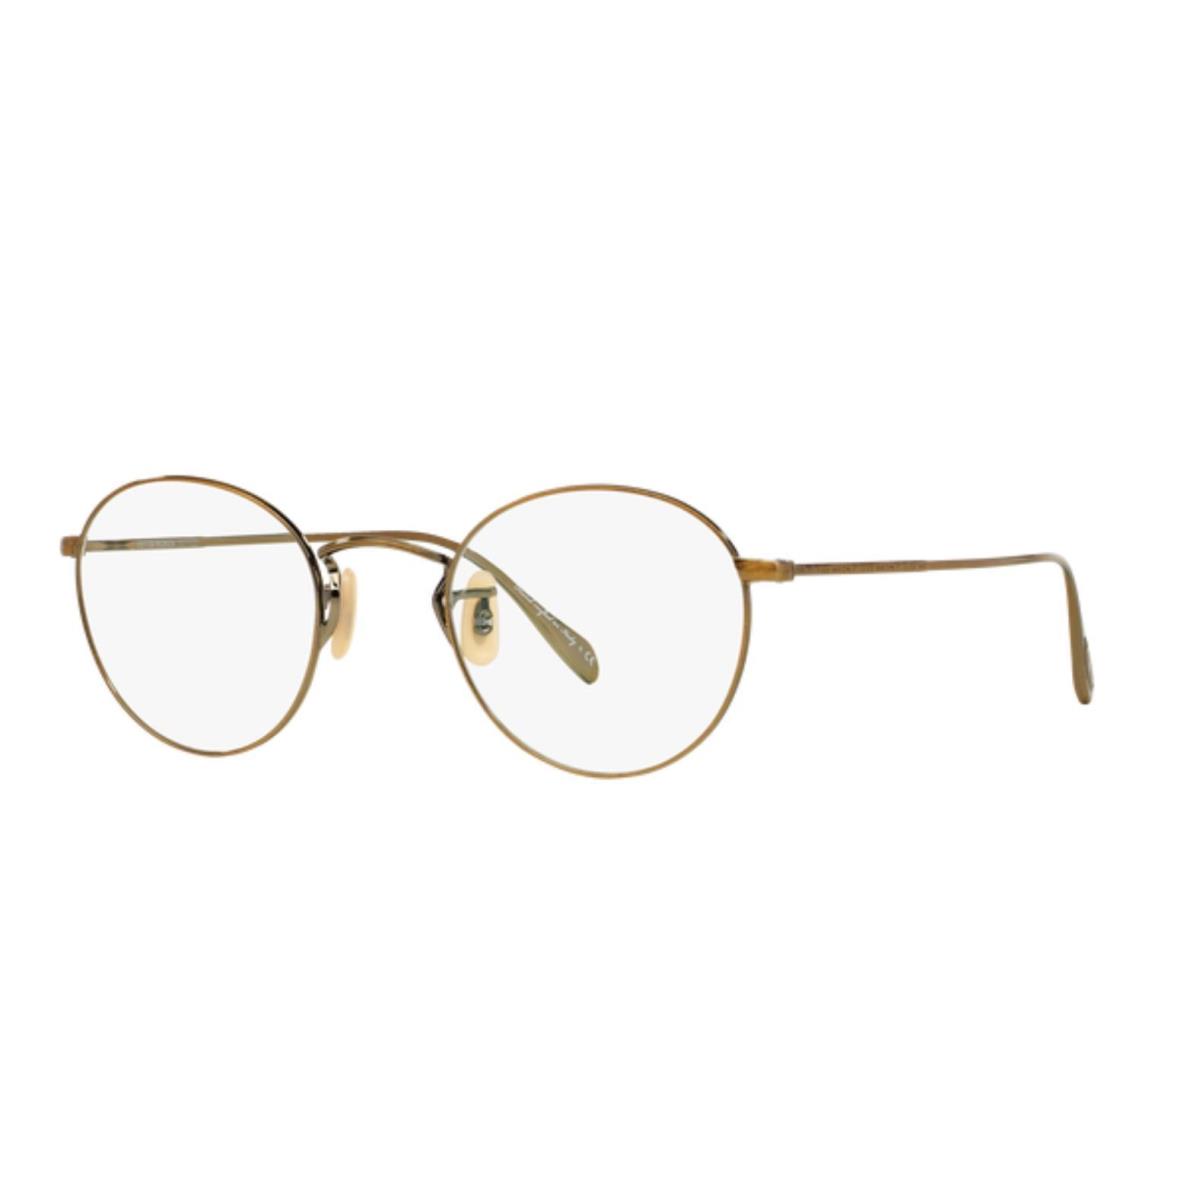 Oliver Peoples 0OV1186 Coleridge 5039 Antique Gold Eyeglasses - antique gold Frame, Clear Lens